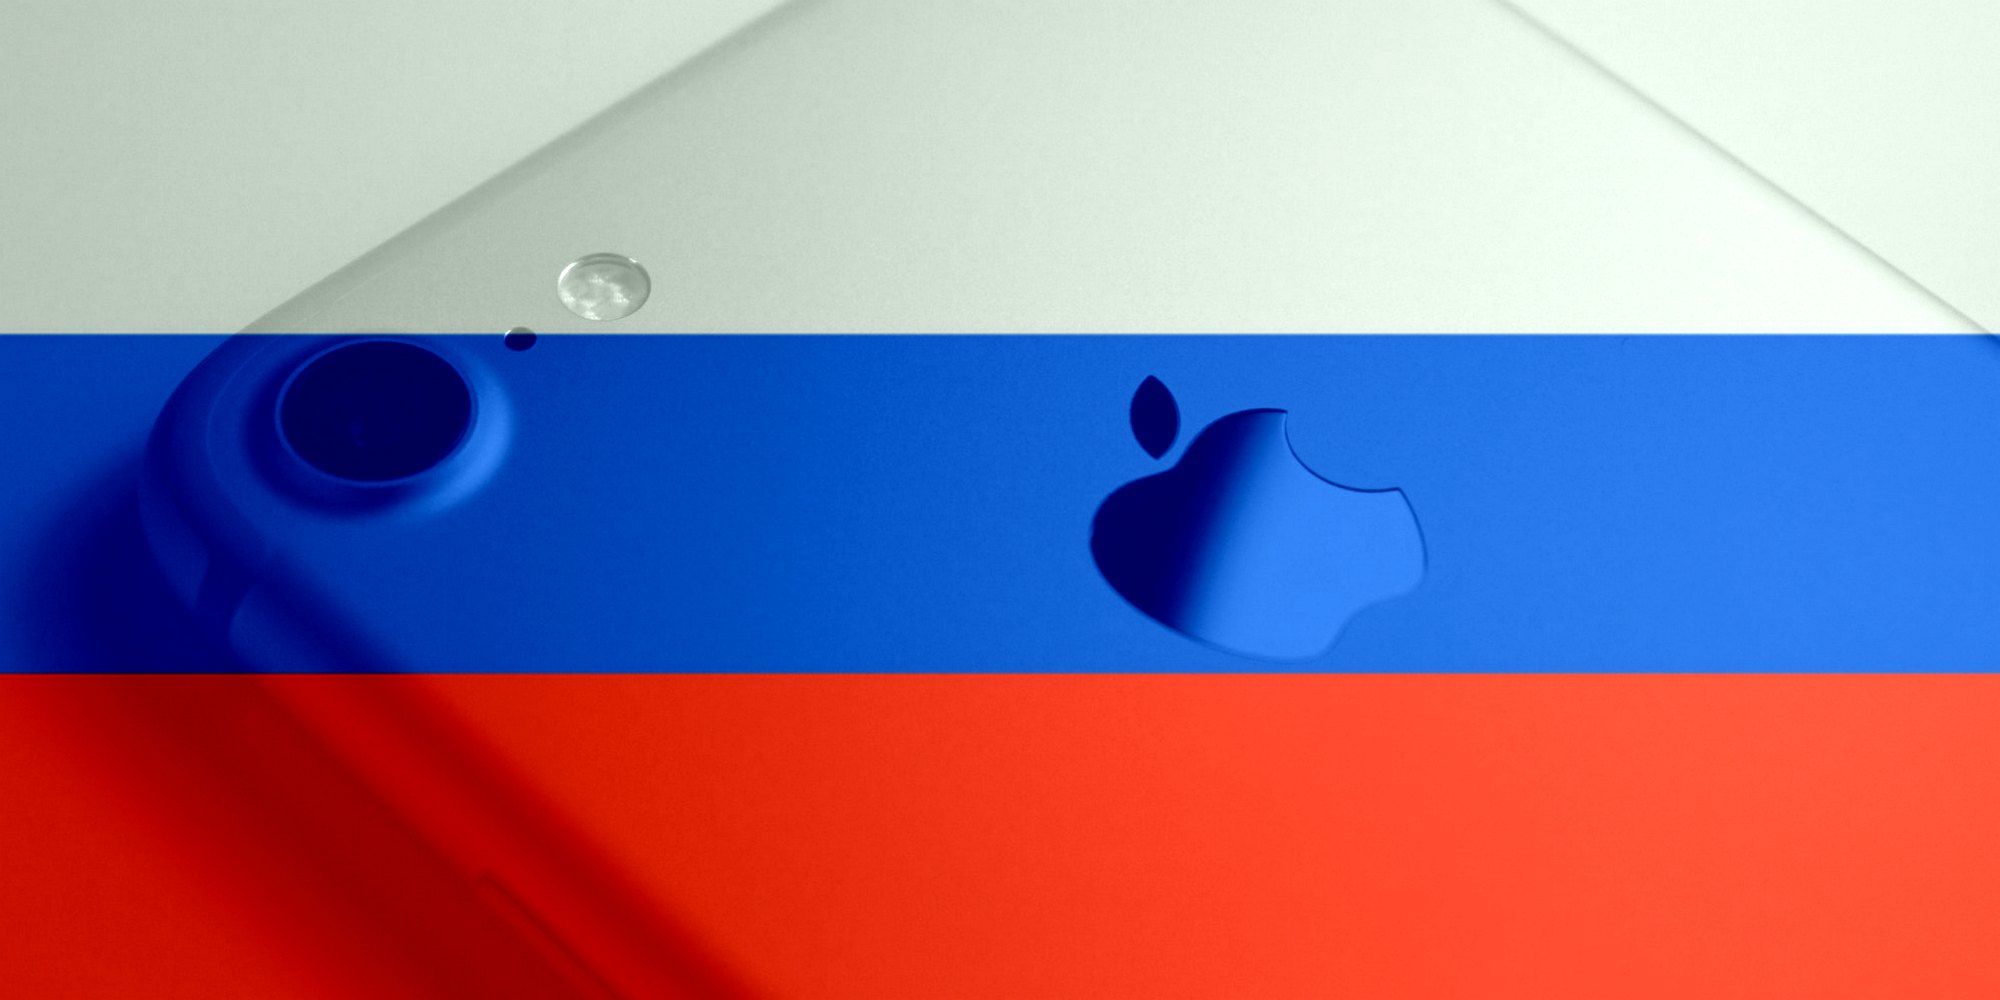 Apple detiene las ventas de productos en Rusia y limita los servicios, incluido Apple Pay